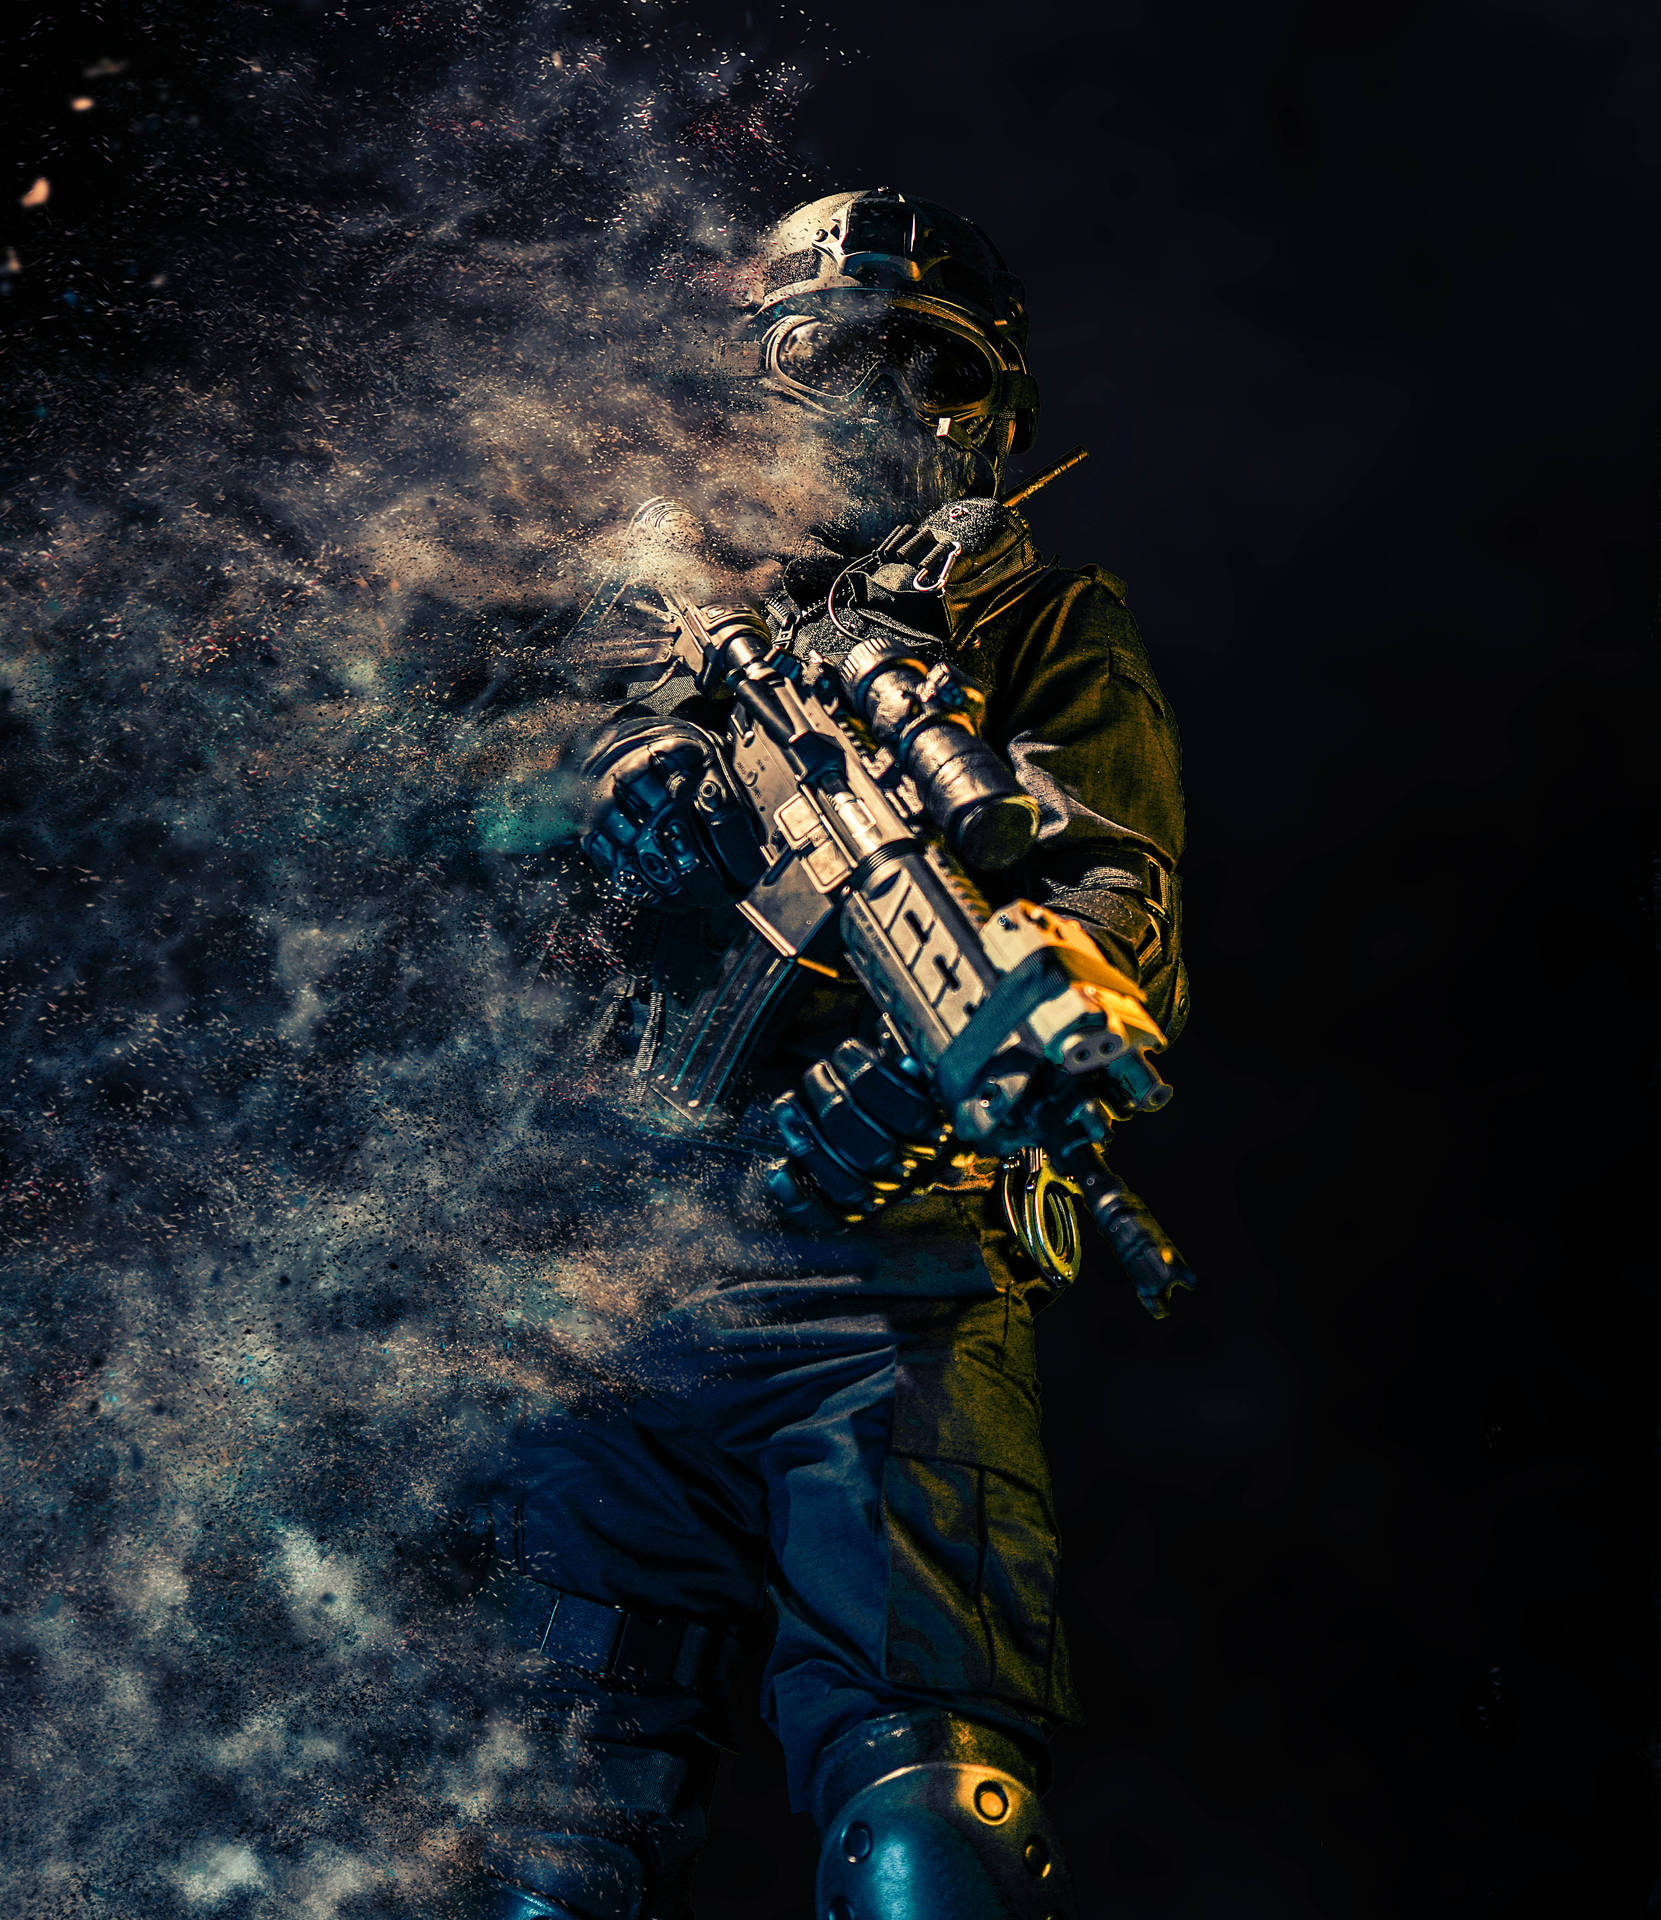 Gunman Graphic Art Background